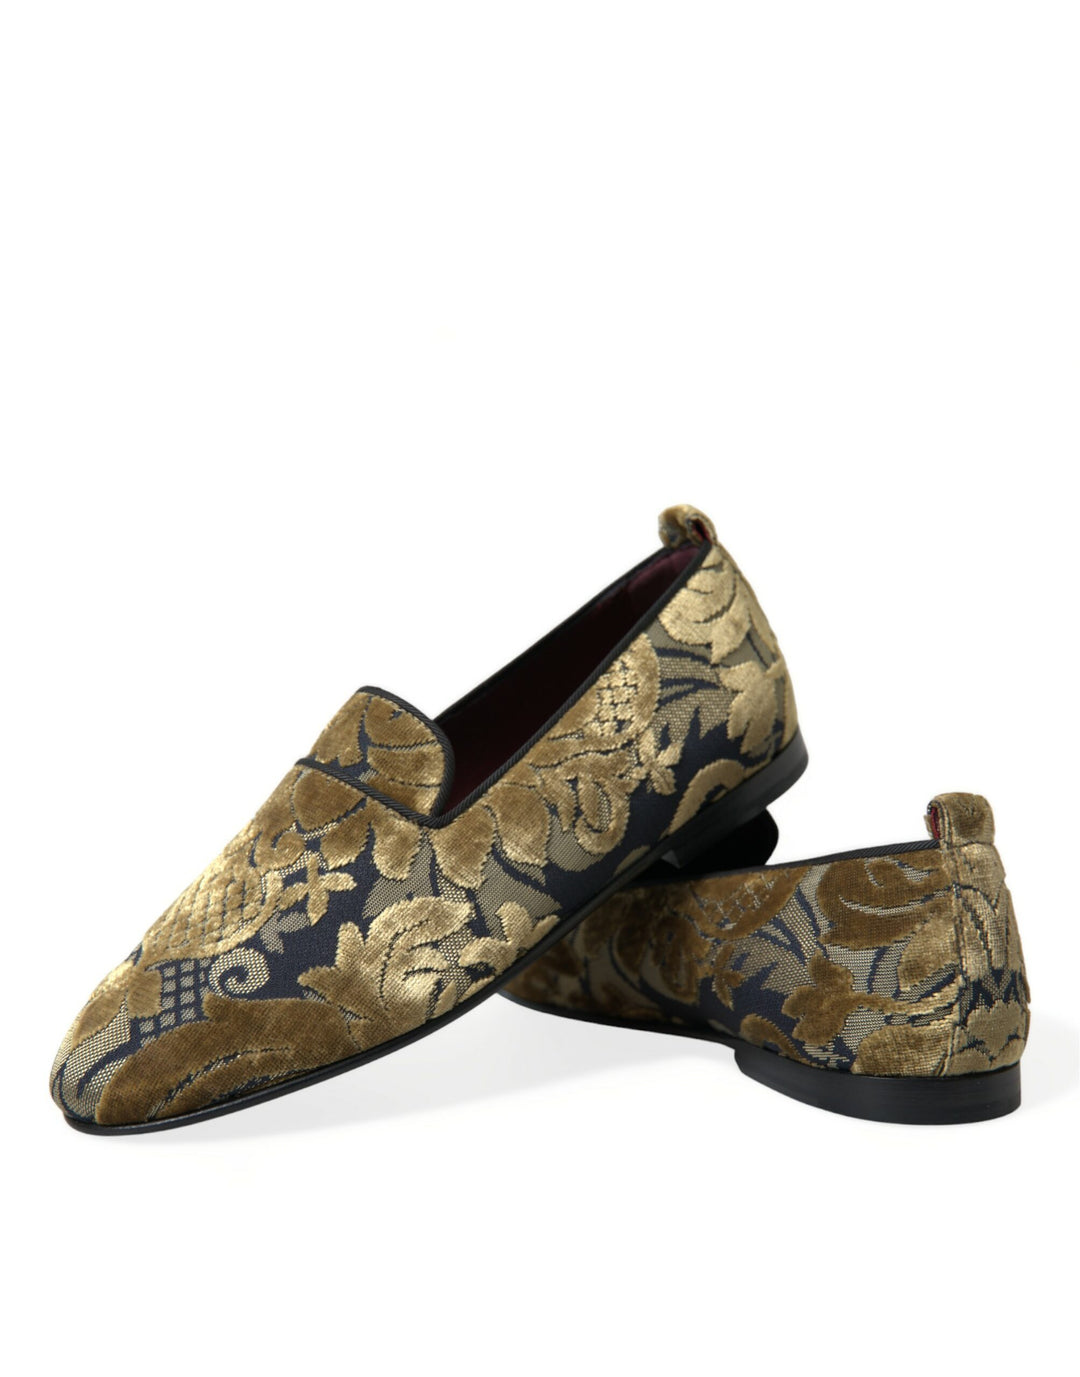 Dolce & Gabbana Opulent Gold Velvet Smoking Slippers